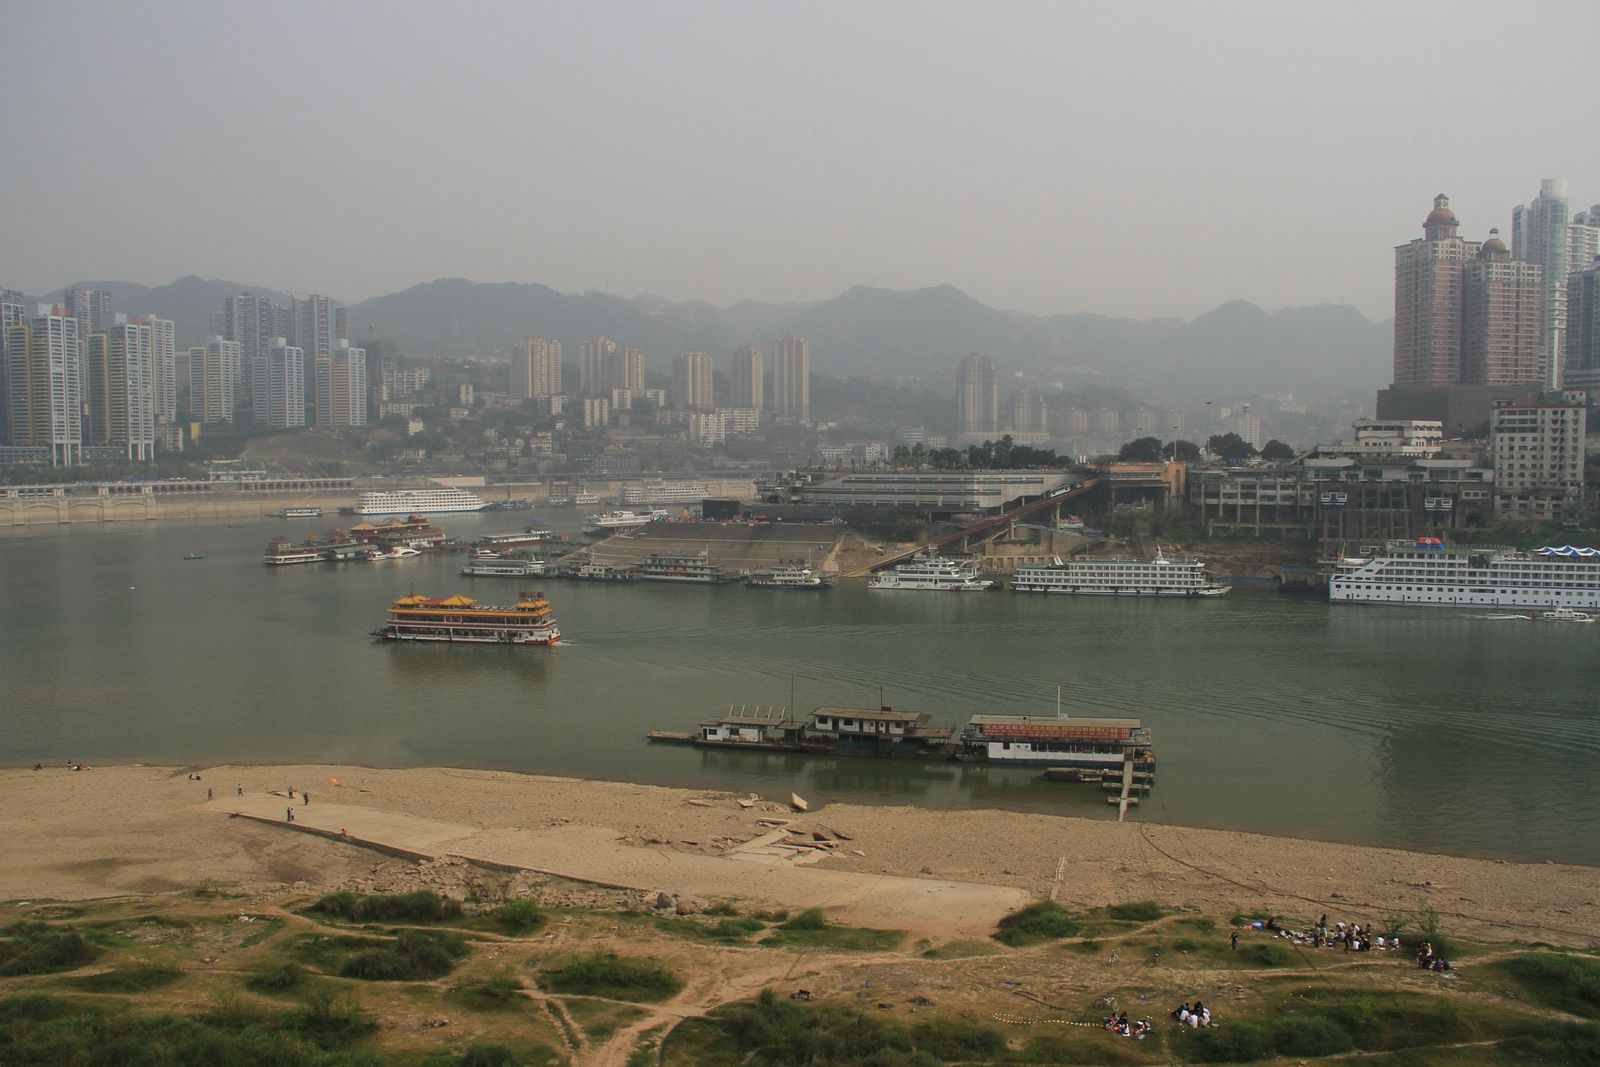 Le port de chaotianmen, au confluent du yangtze et du fleuve jaune.